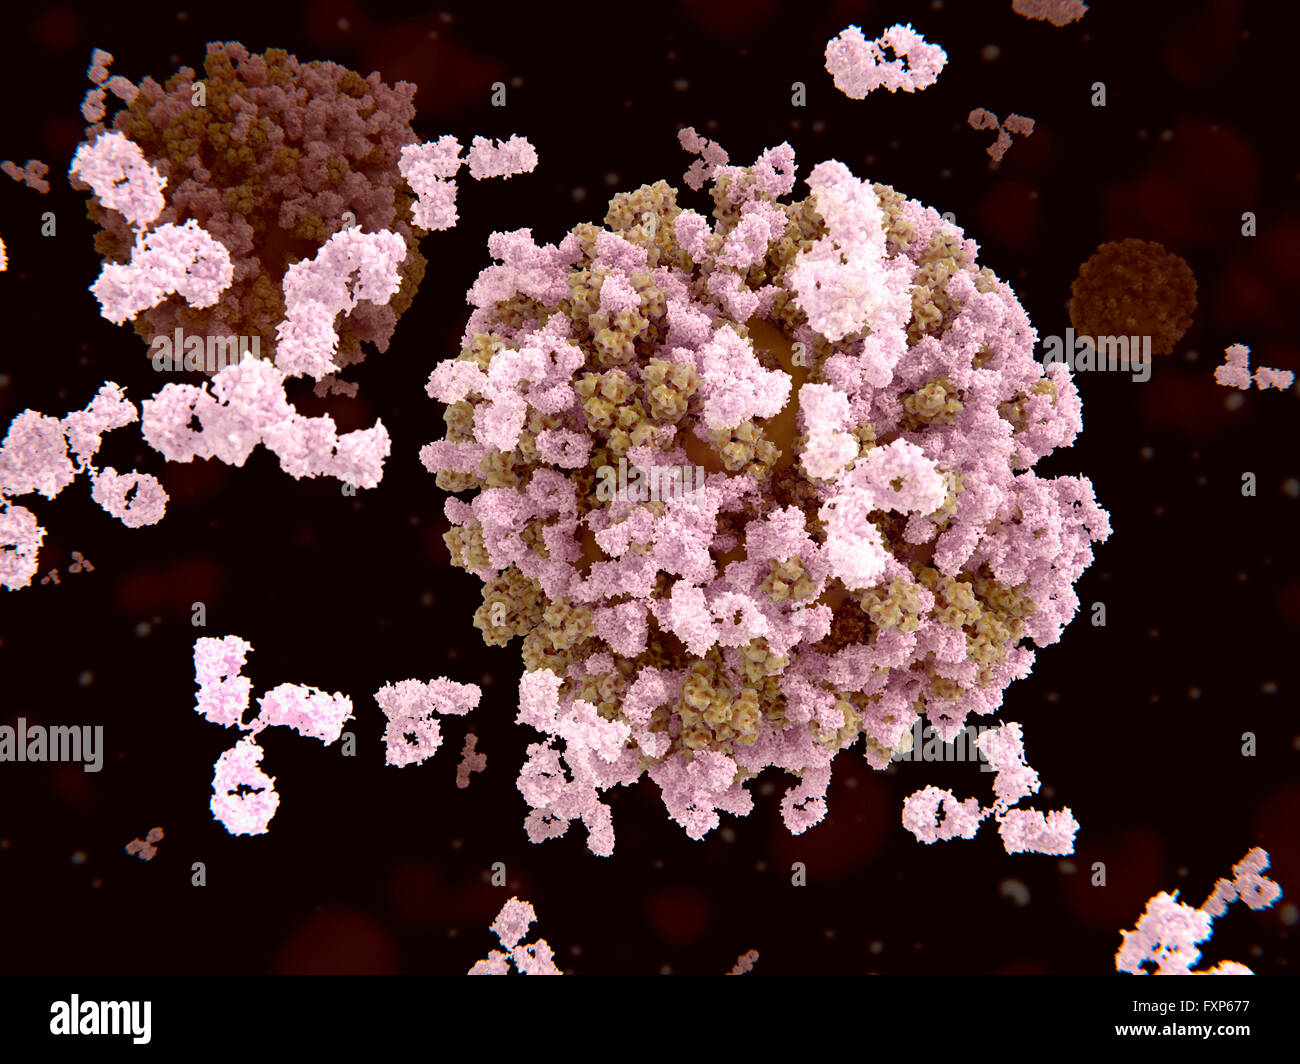 Gli anticorpi e i virus influenzali. Illustrazione di anticorpi (rosa) attaccare virus influenzali di particelle (marrone). Gli anticorpi si legano alla proteina emoagglutinina, che contiene il sito antigenico del virus. Questo legame di anticorpi impedisce che le particelle di virus di legarsi alla superficie delle cellule umane. L'influenza è nel gruppo di orthomyxovirus di virus. Infetta il tratto respiratorio e provoca febbre, dolori muscolari, mal di gola e la sensazione di affaticamento. Nuovi ceppi di virus di sviluppare rapidamente e può causare epidemie. Foto Stock